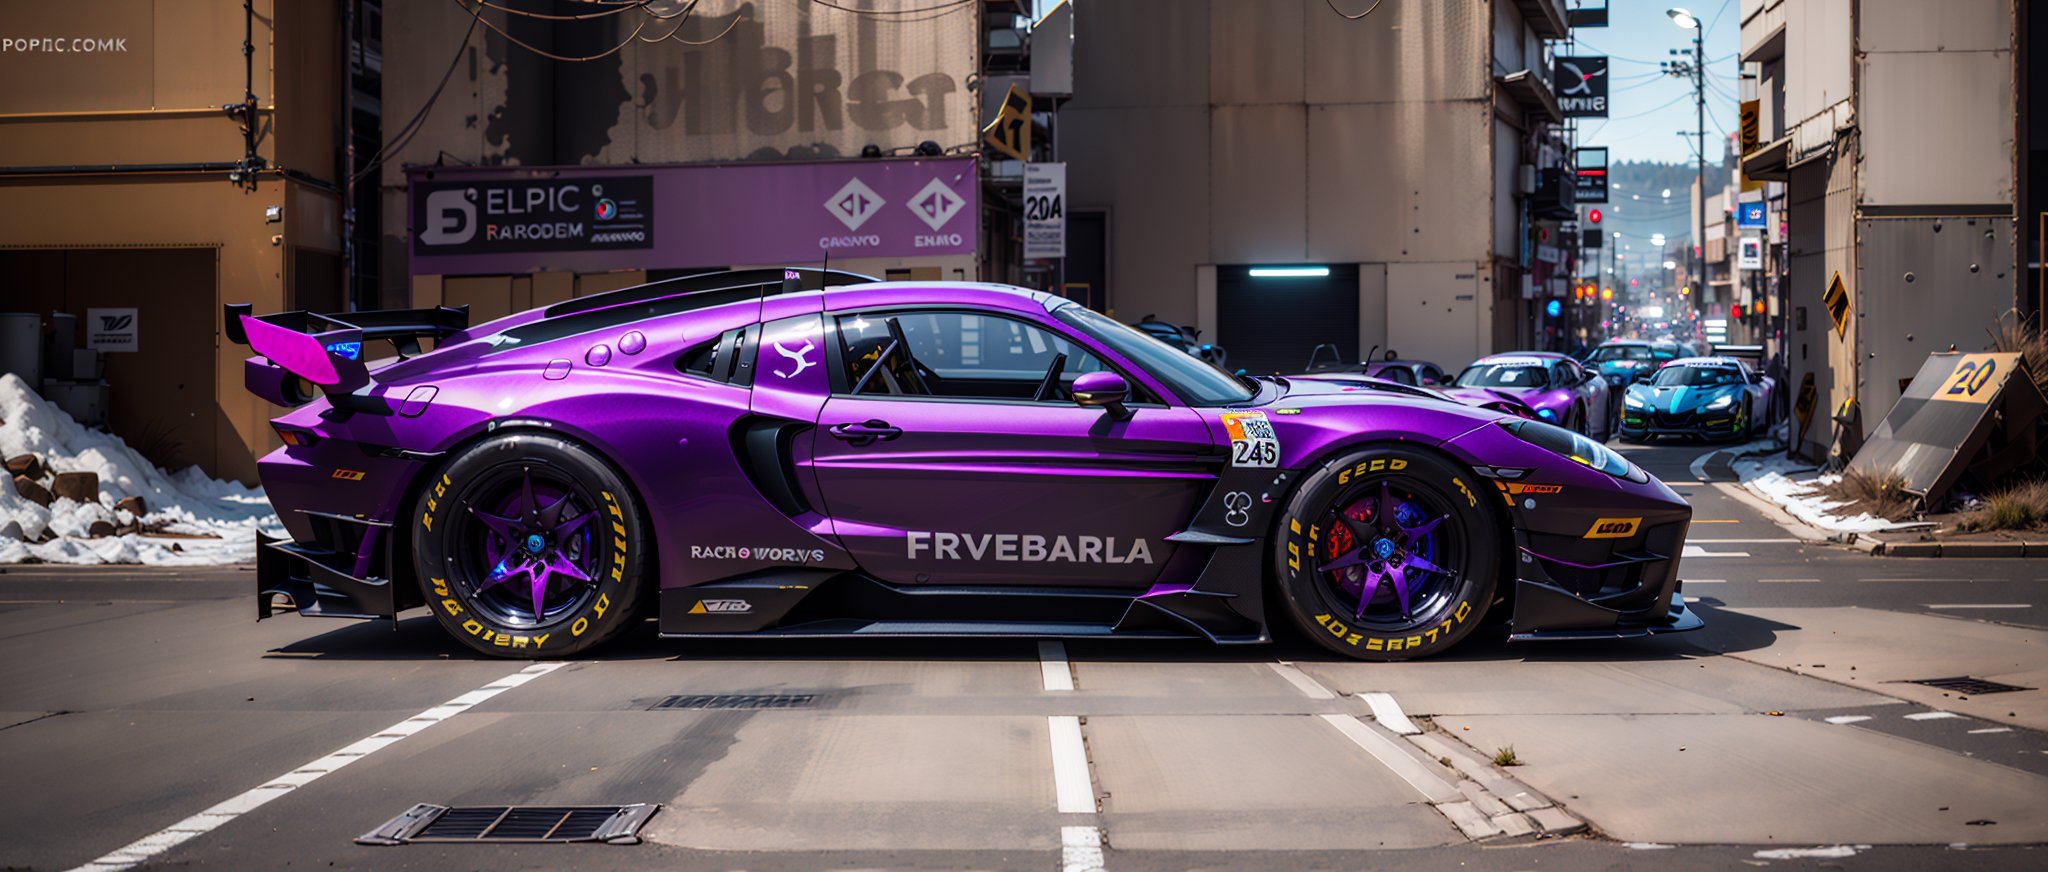 purple galaxy Nebula epic race car 